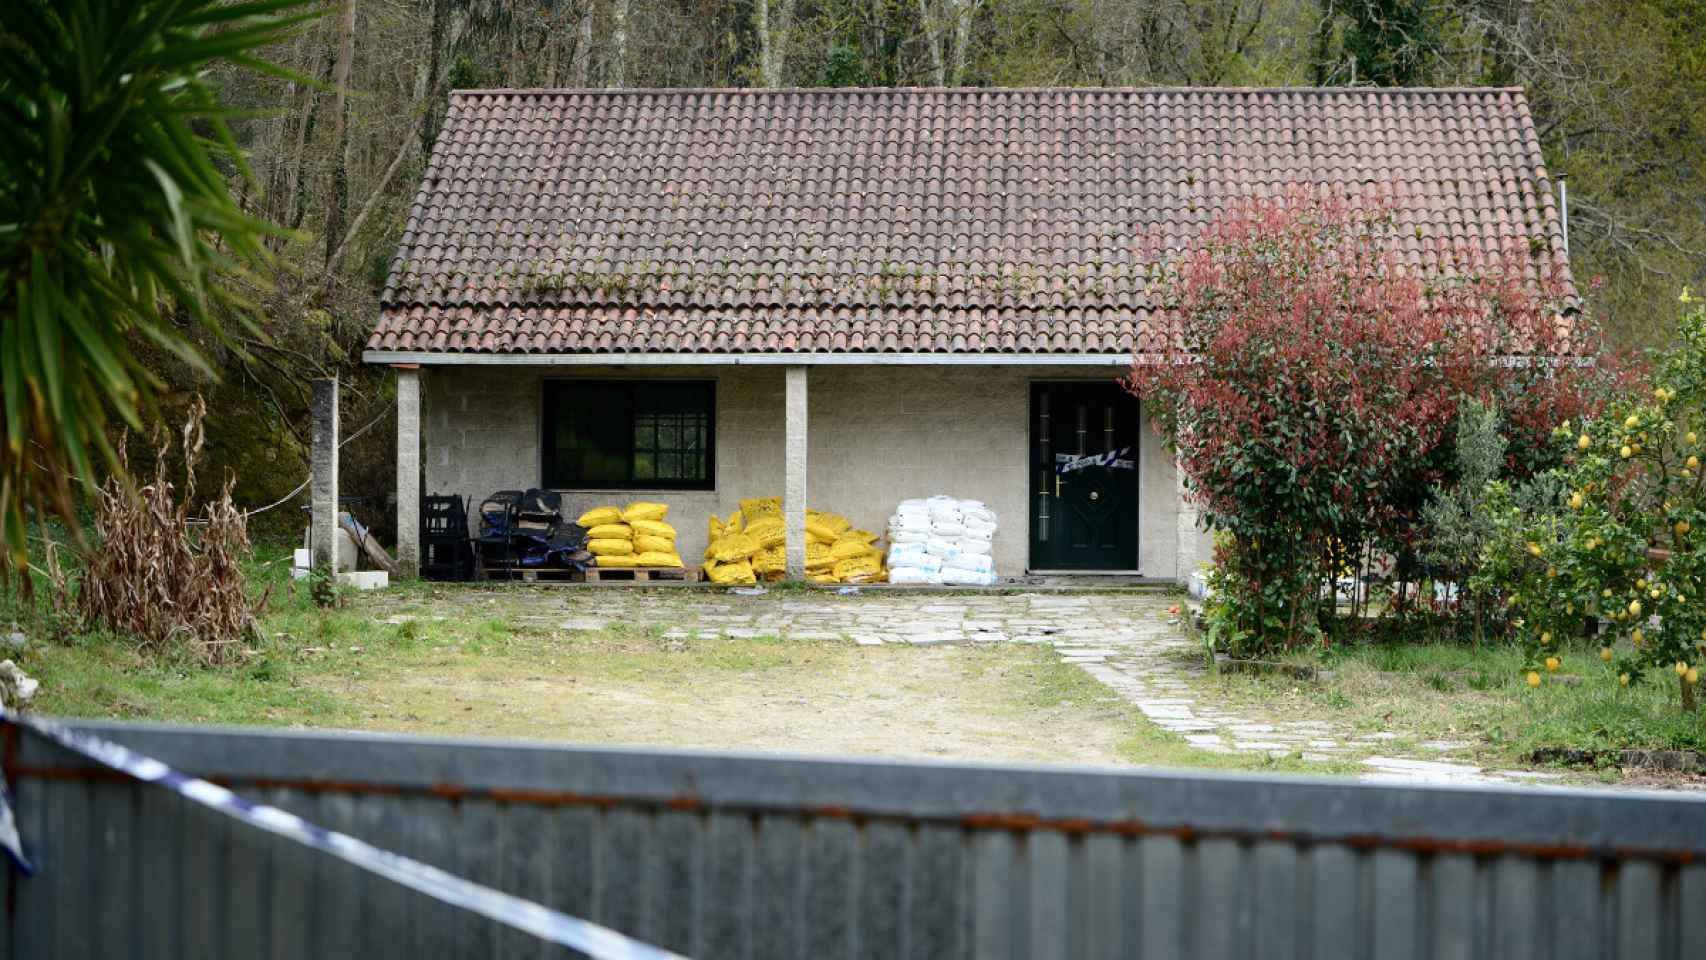 Vivienda donde se encontró el laboratorio de cocaína, en Cerdedo-Cotobade, Pontevedra.